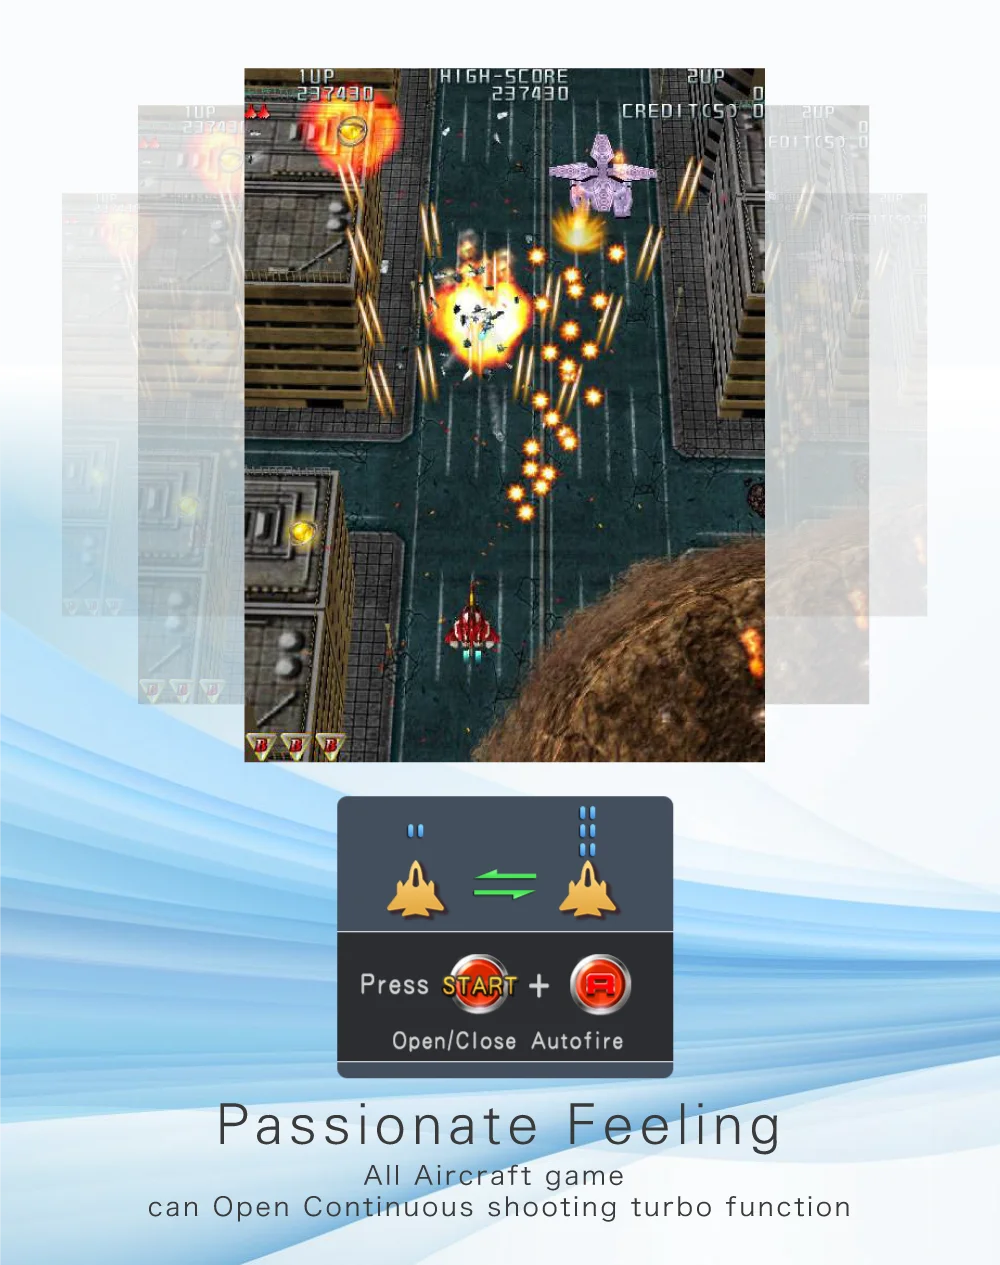 Игровой автомат Pandora box 6 1300 в 1 видеоигра подростков мутант ниндзя черепаха станция мульти игровой автомат Ретро ТВ игры